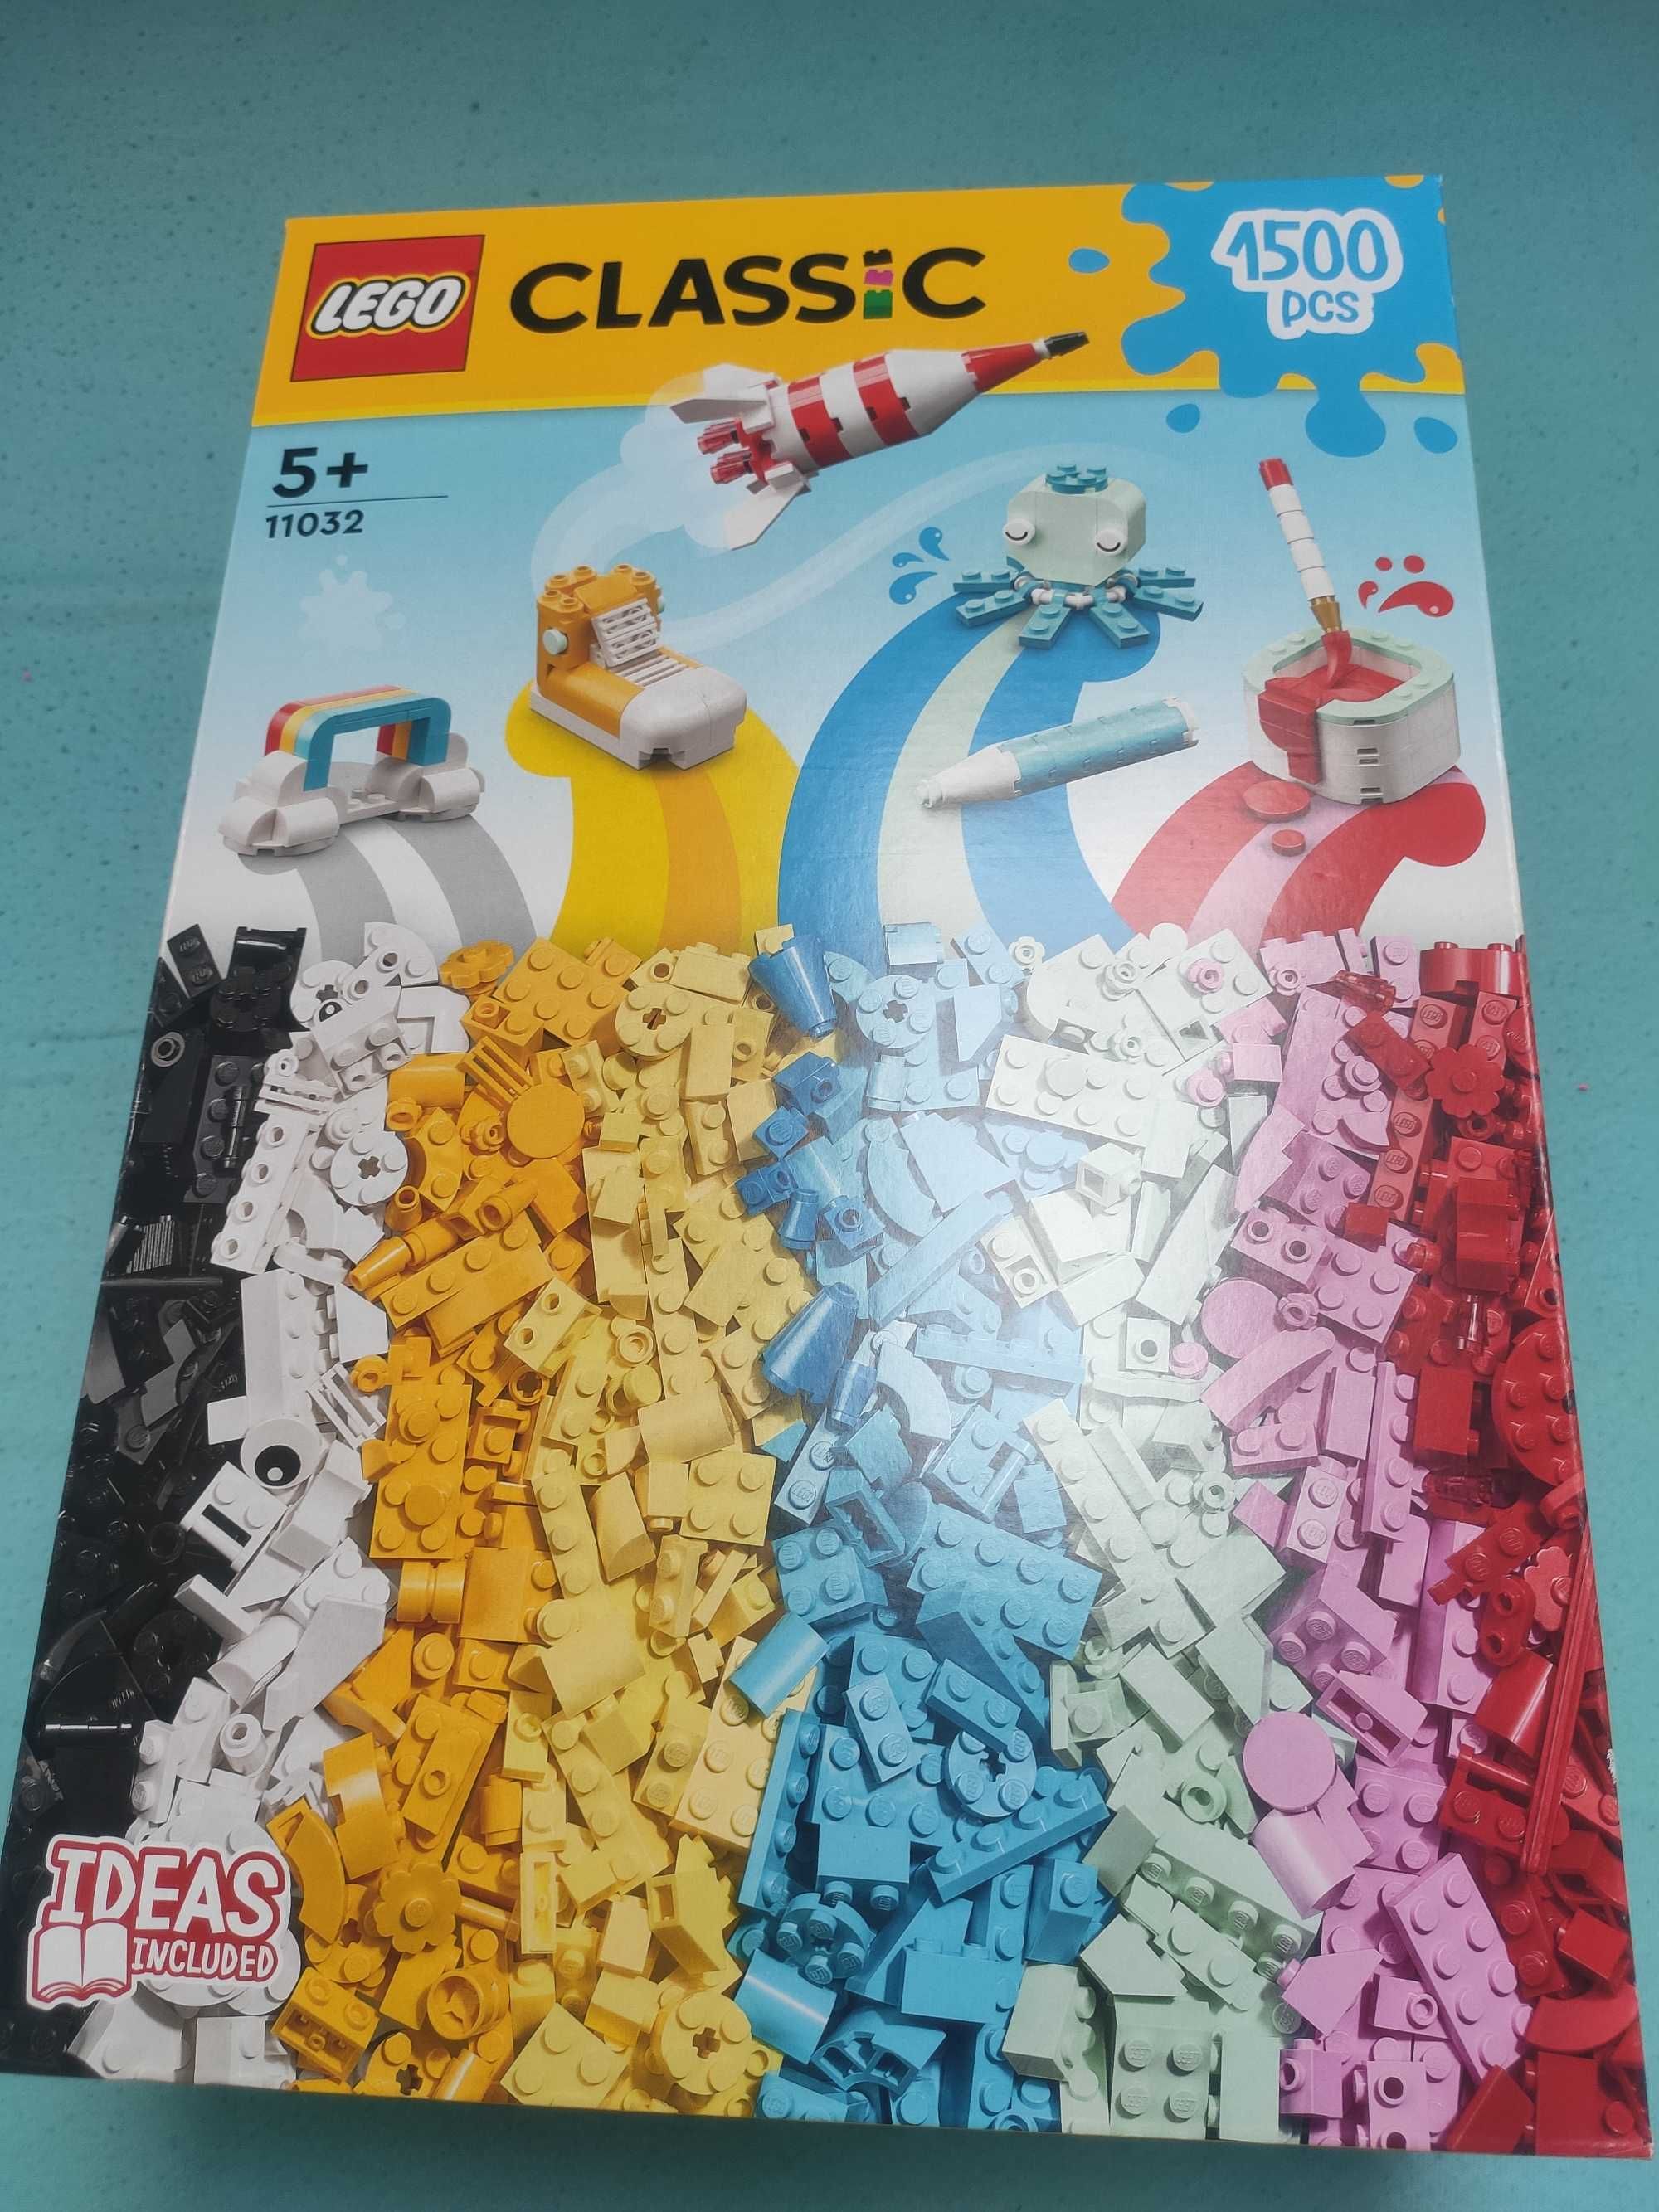 Klocki LEGO Classic 11032